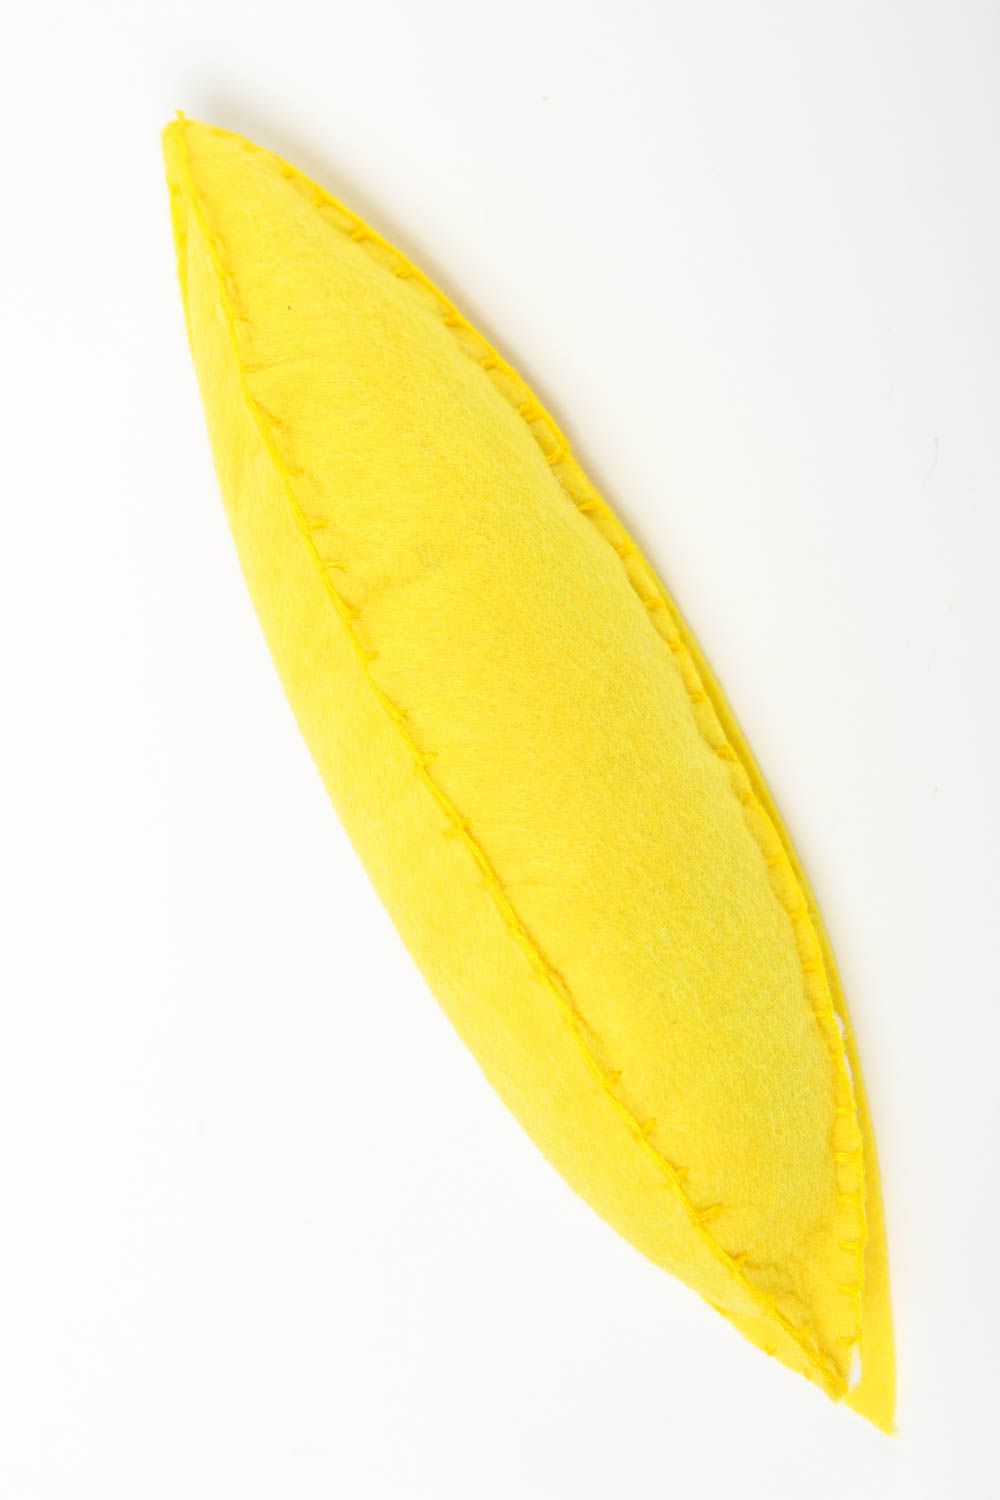 Peluche banane fait main Jouet feutrine jaune original Cadeau pour enfant photo 2